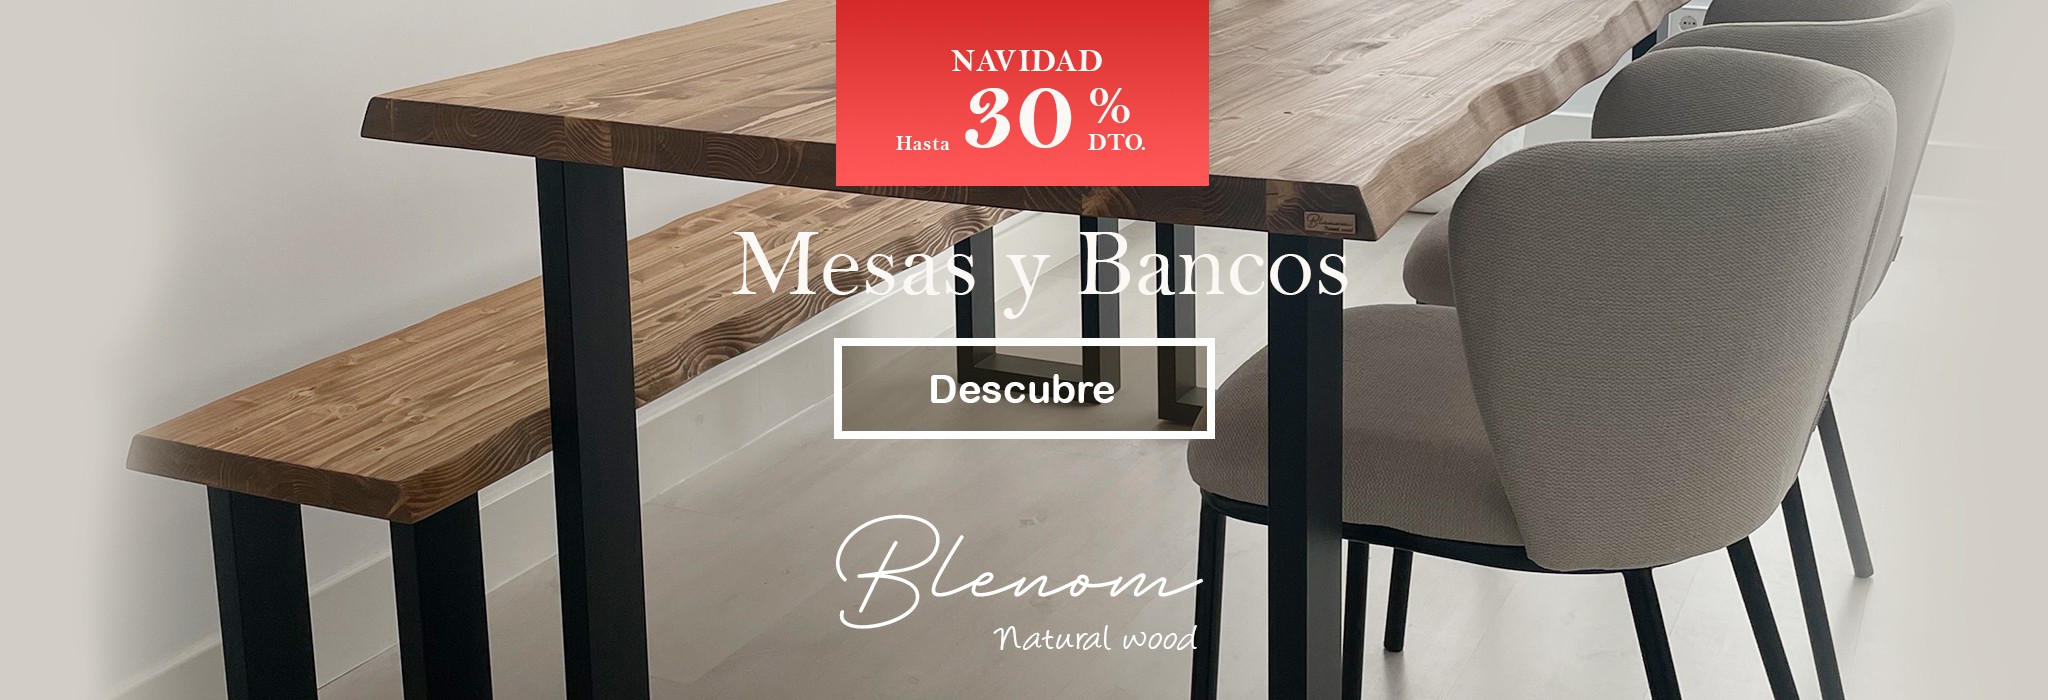 Anaquel + Muebles de Cocina Line 150/El Bosque - El Bosque